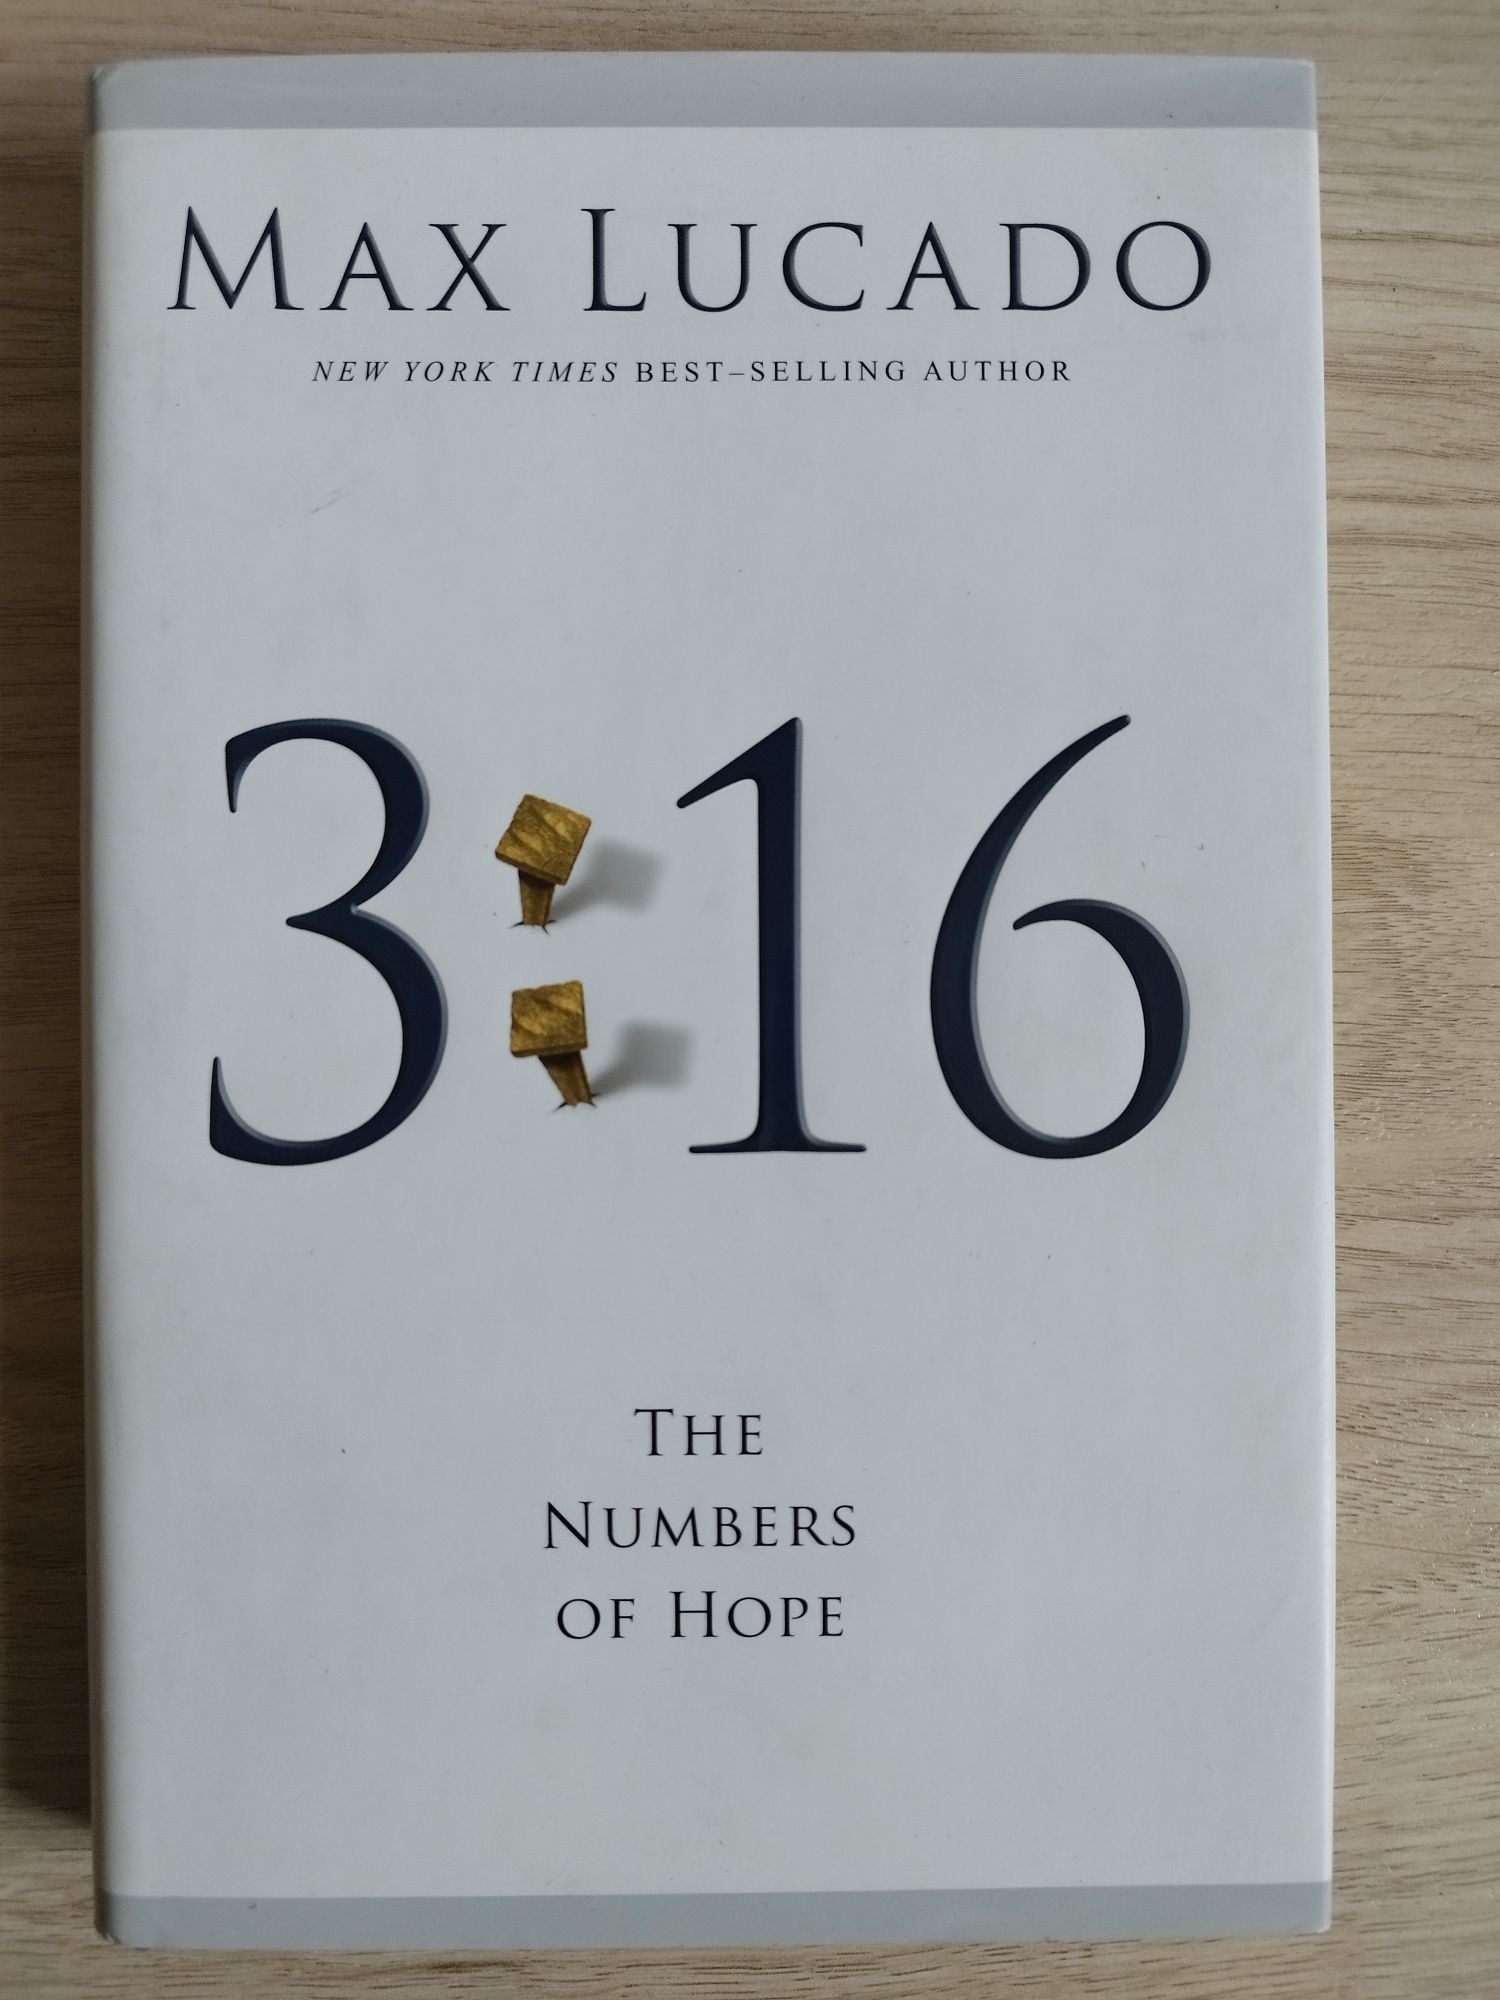 Książka po angielsku Max Lucado 3, 16 The Numbers od Hope